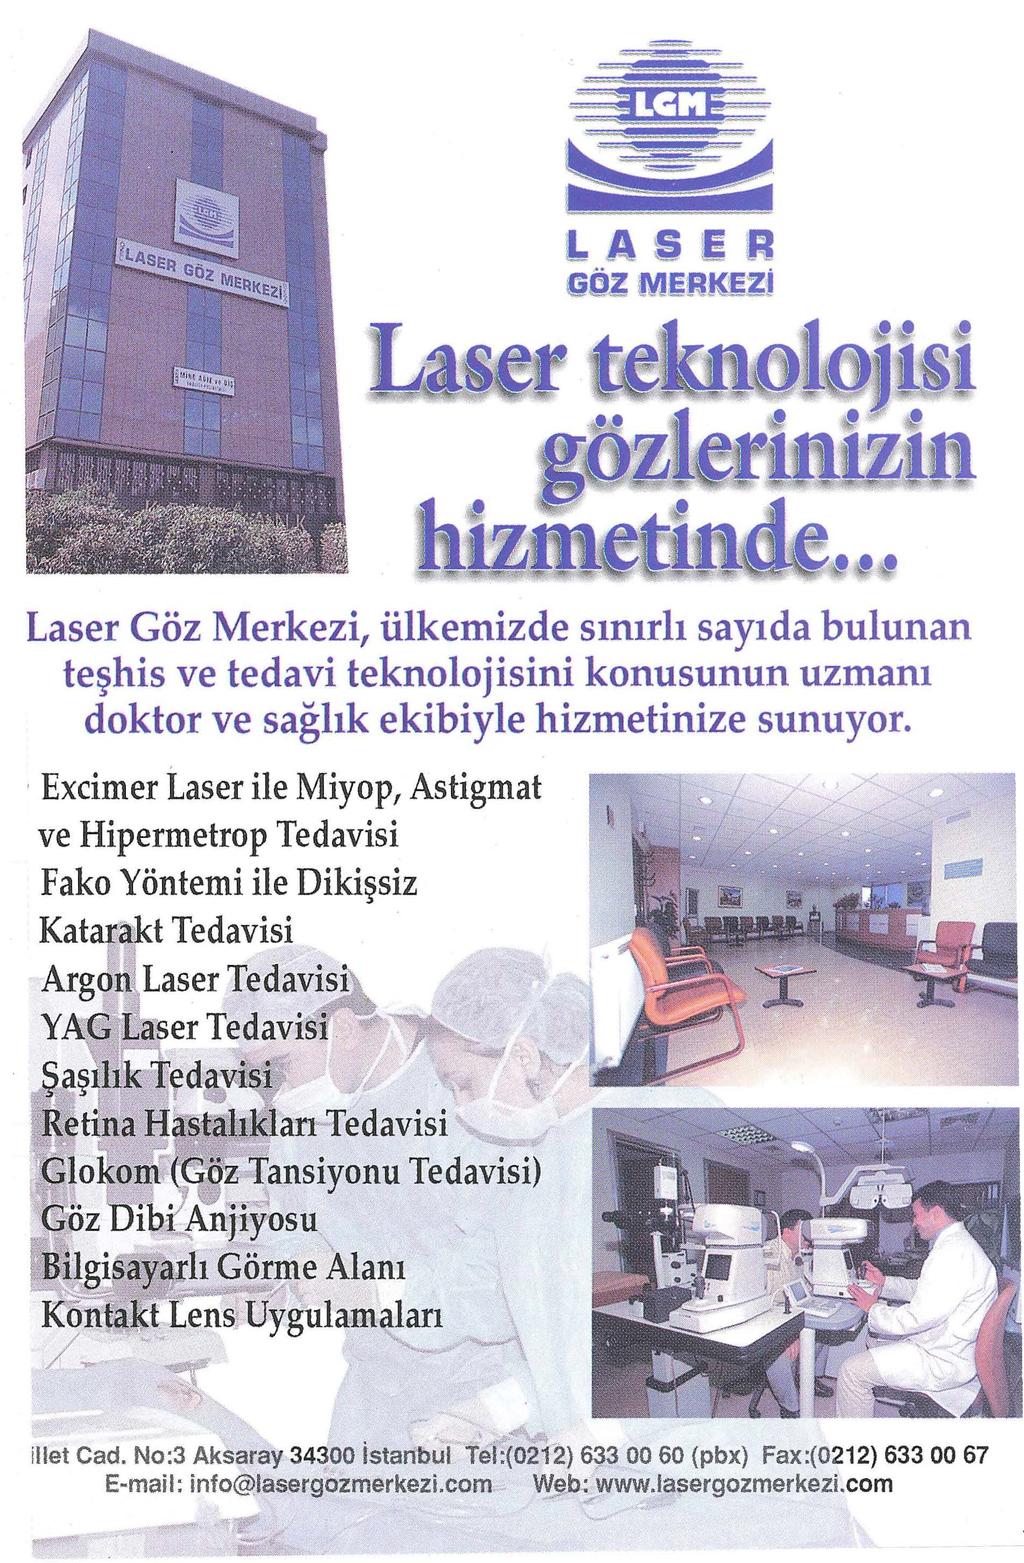 Laser Göz Merkezi, ülkemizde sınırlı sayıda bulunan teşhis ve tedavi teknolojisini konusunun uzmanı doktor ve sağlık ekibiyle hizmetinize sunuyor. ~~., ~,Jj~.;::'.